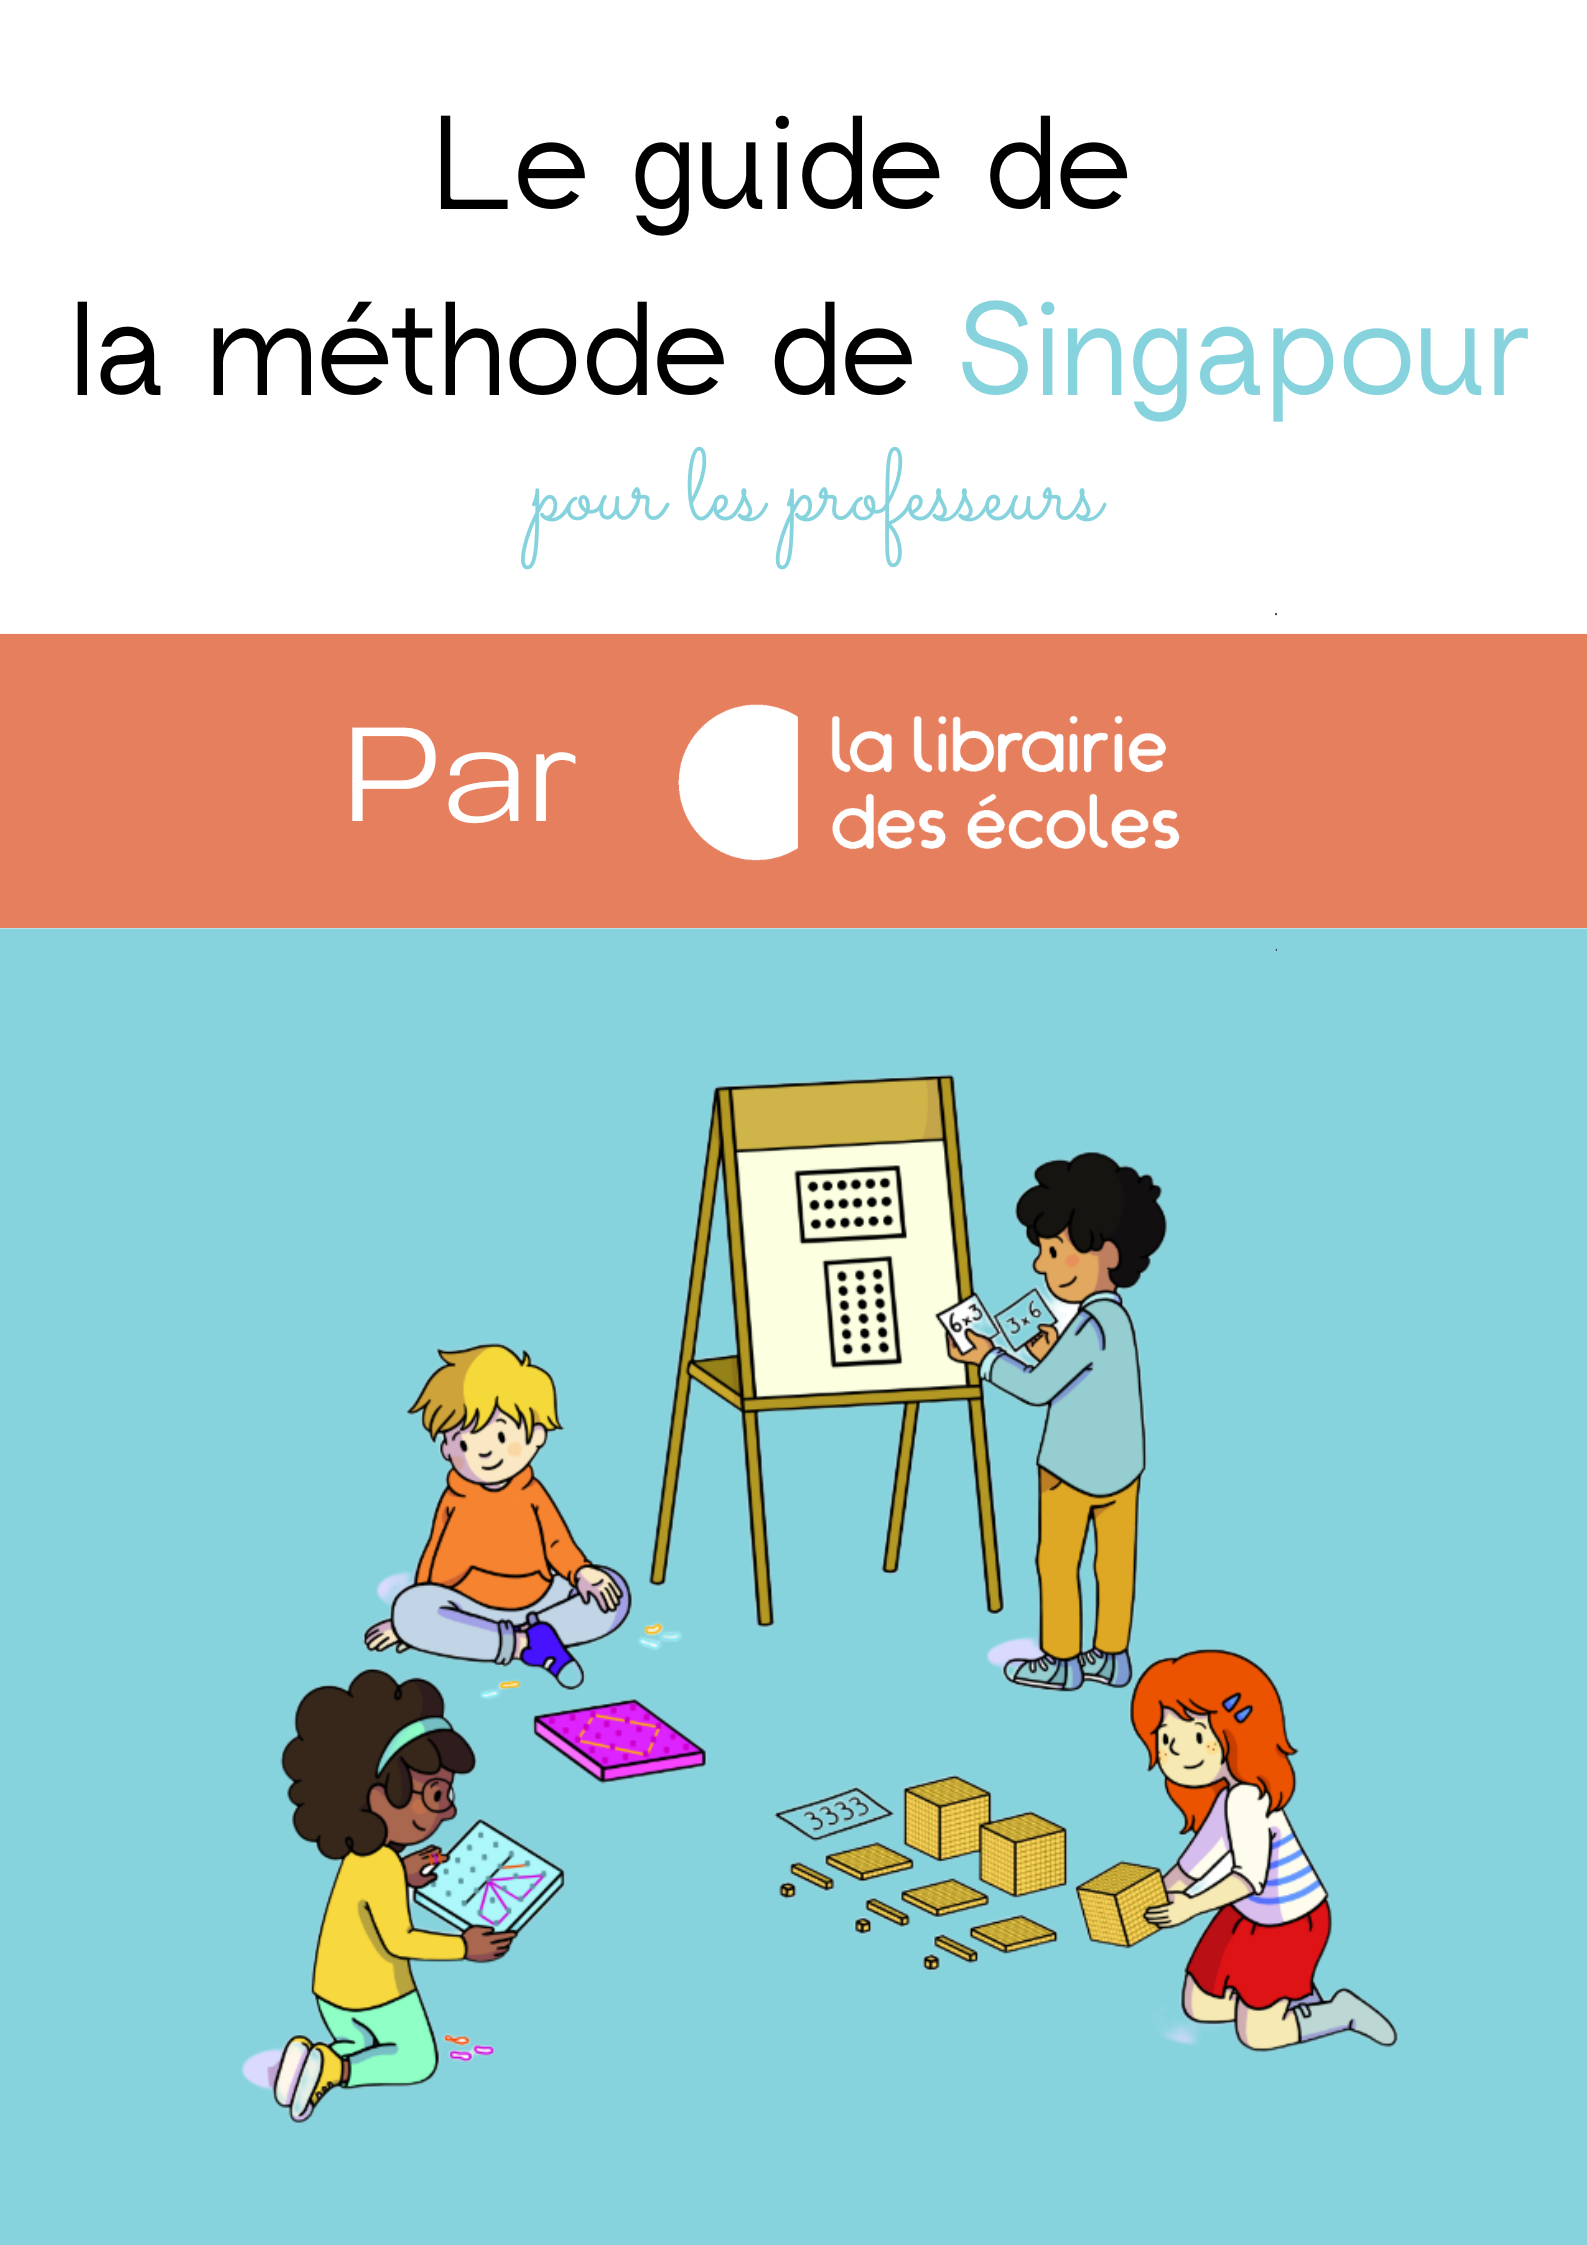 Méthode Singapour : comment apprendre les mathématiques facilement ? 